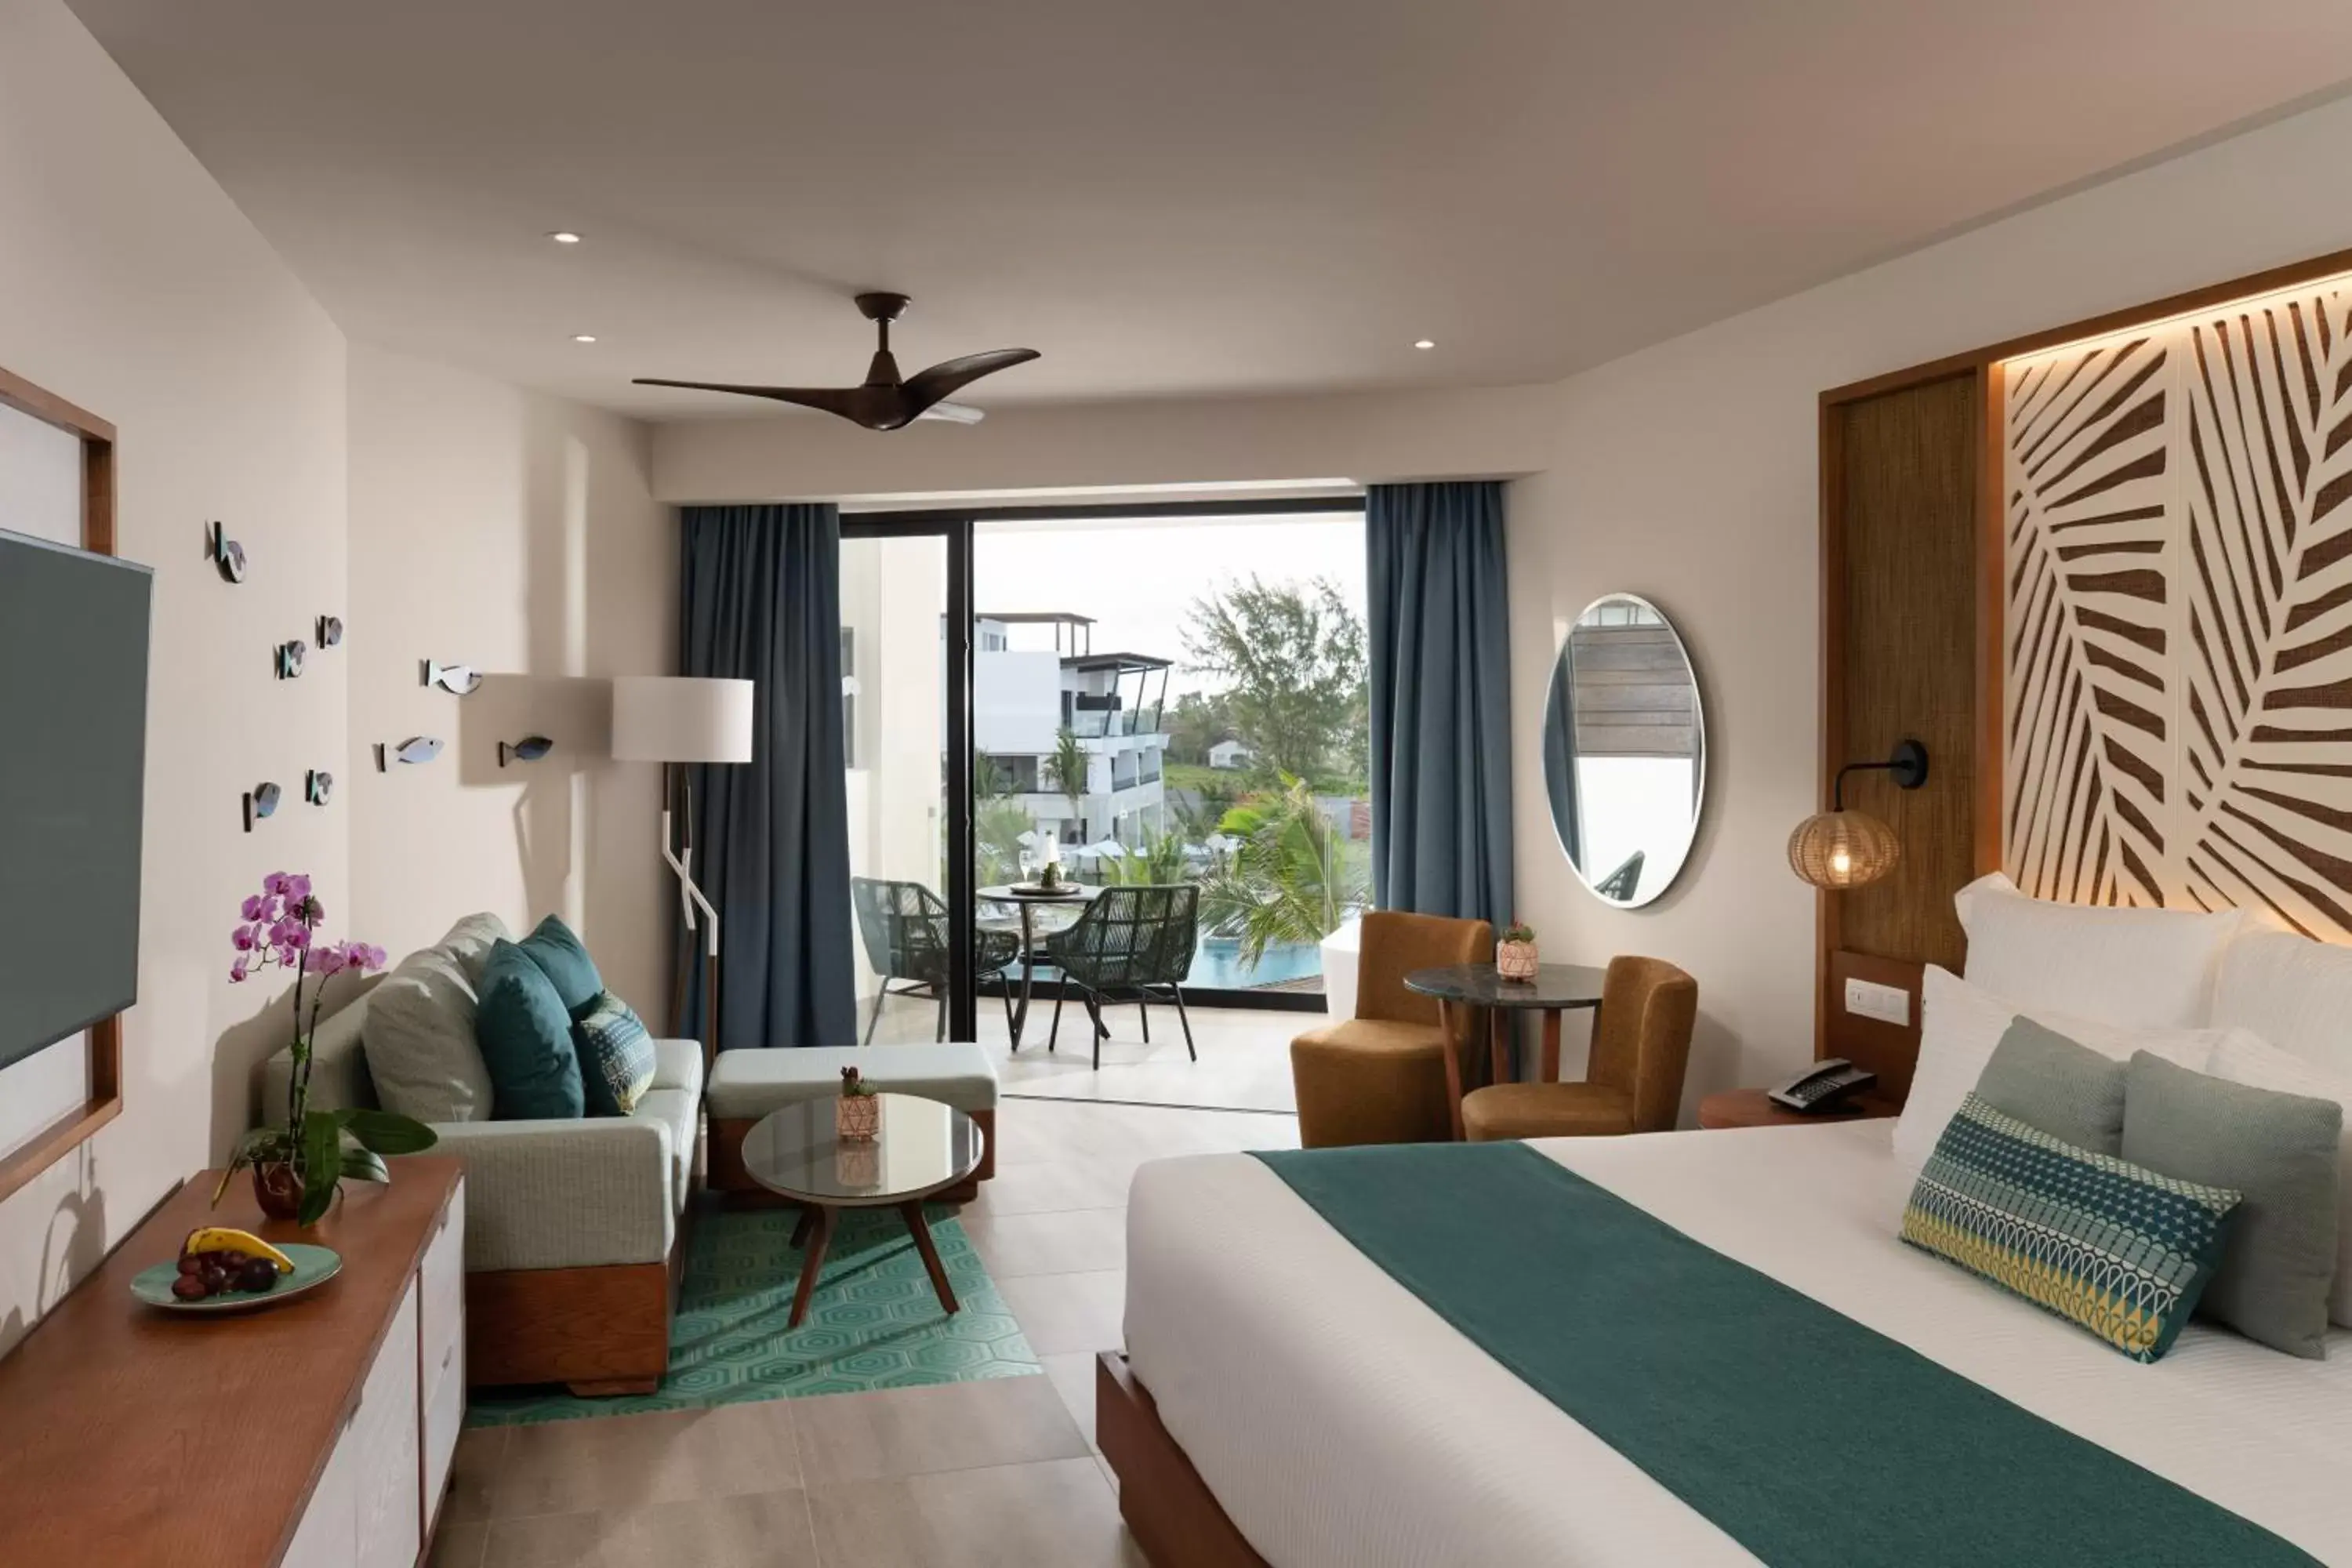 Bedroom in Dreams Macao Beach Punta Cana